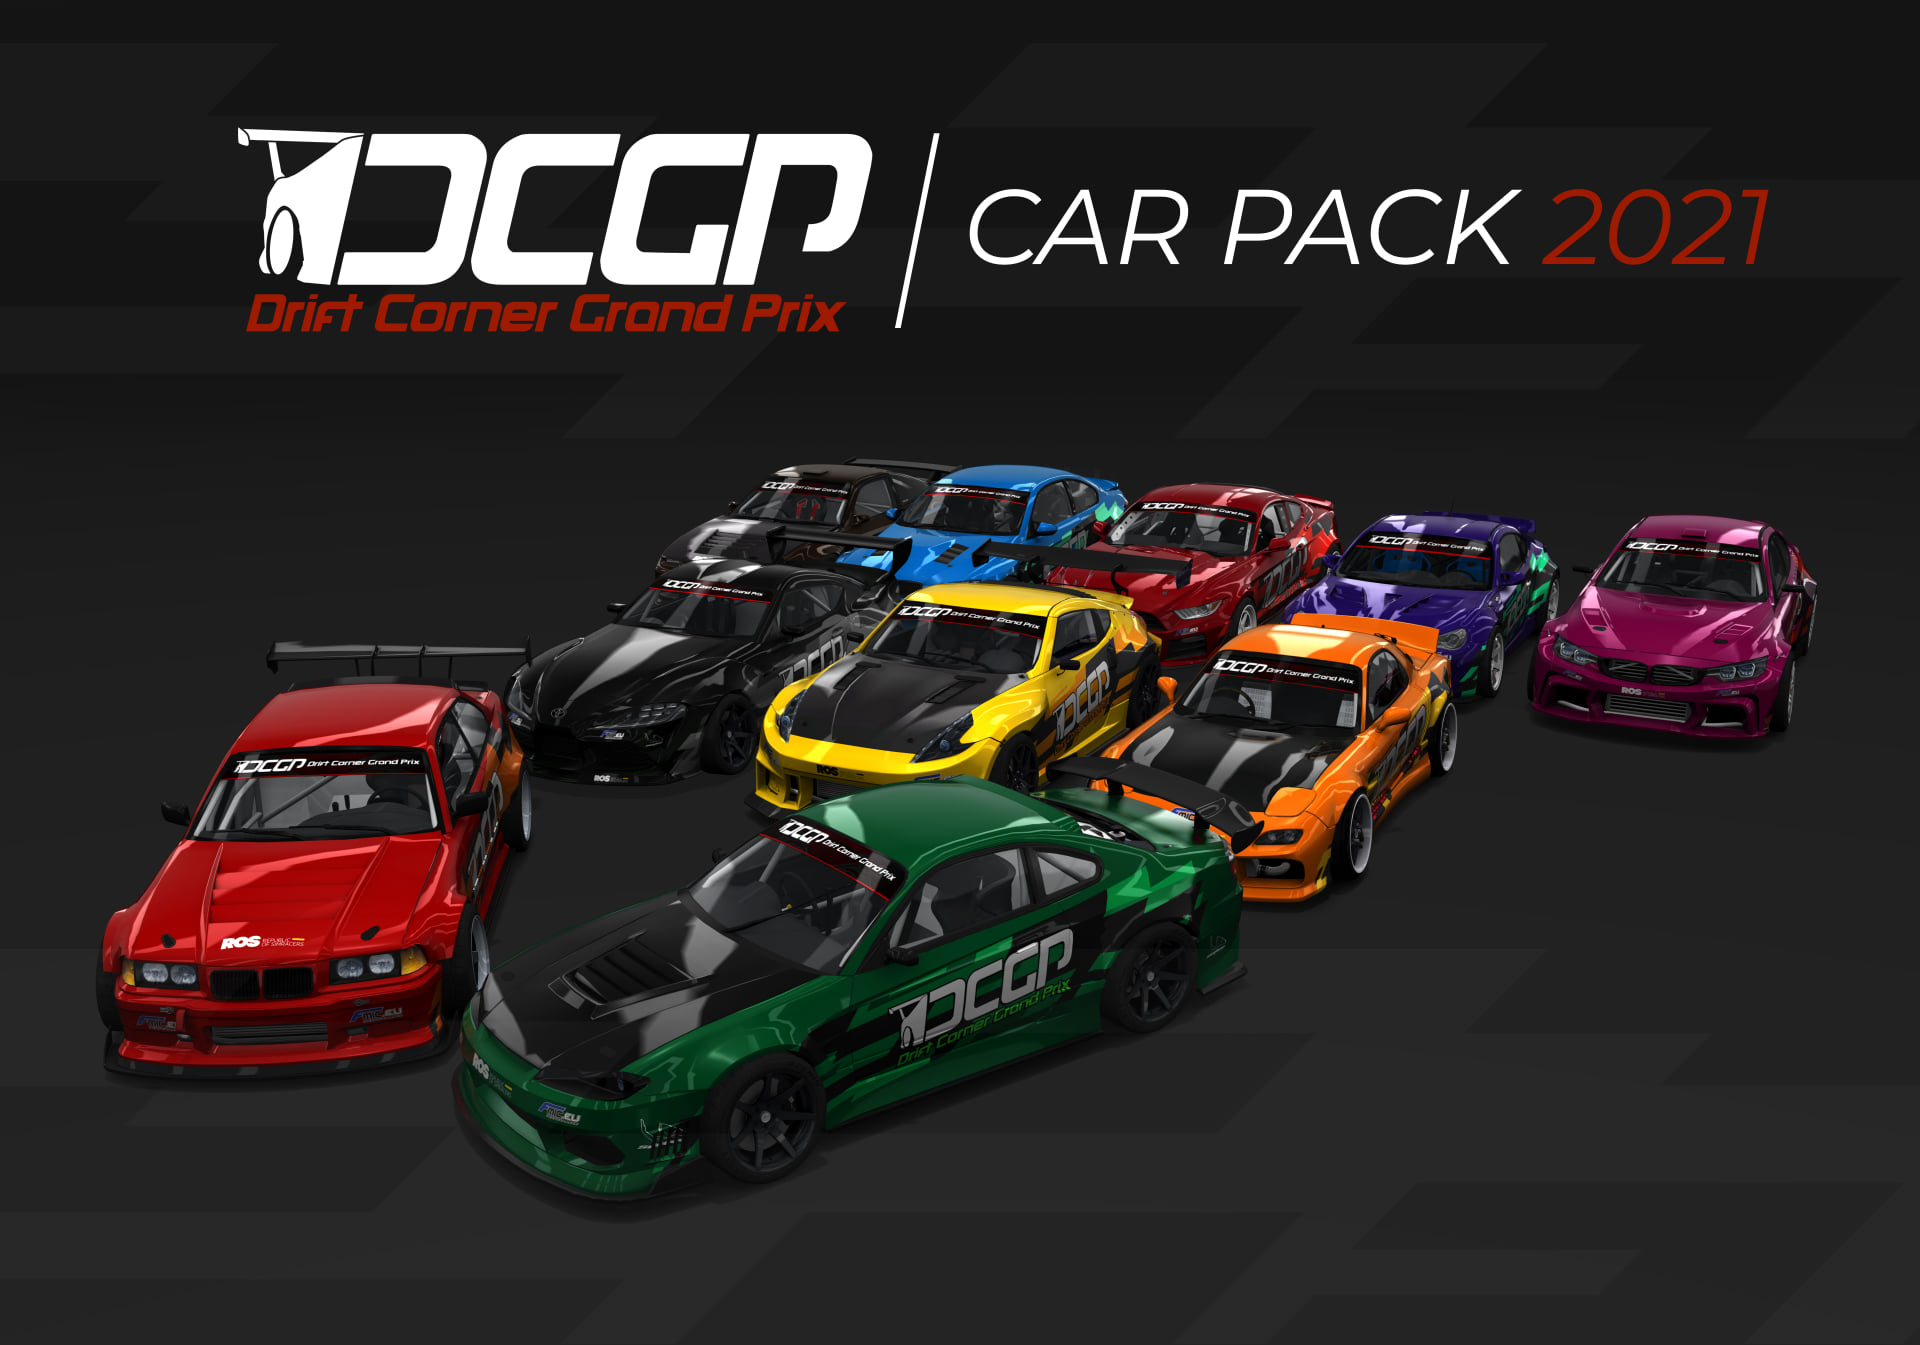 VOSANCO - Next Level Drift Car Pack